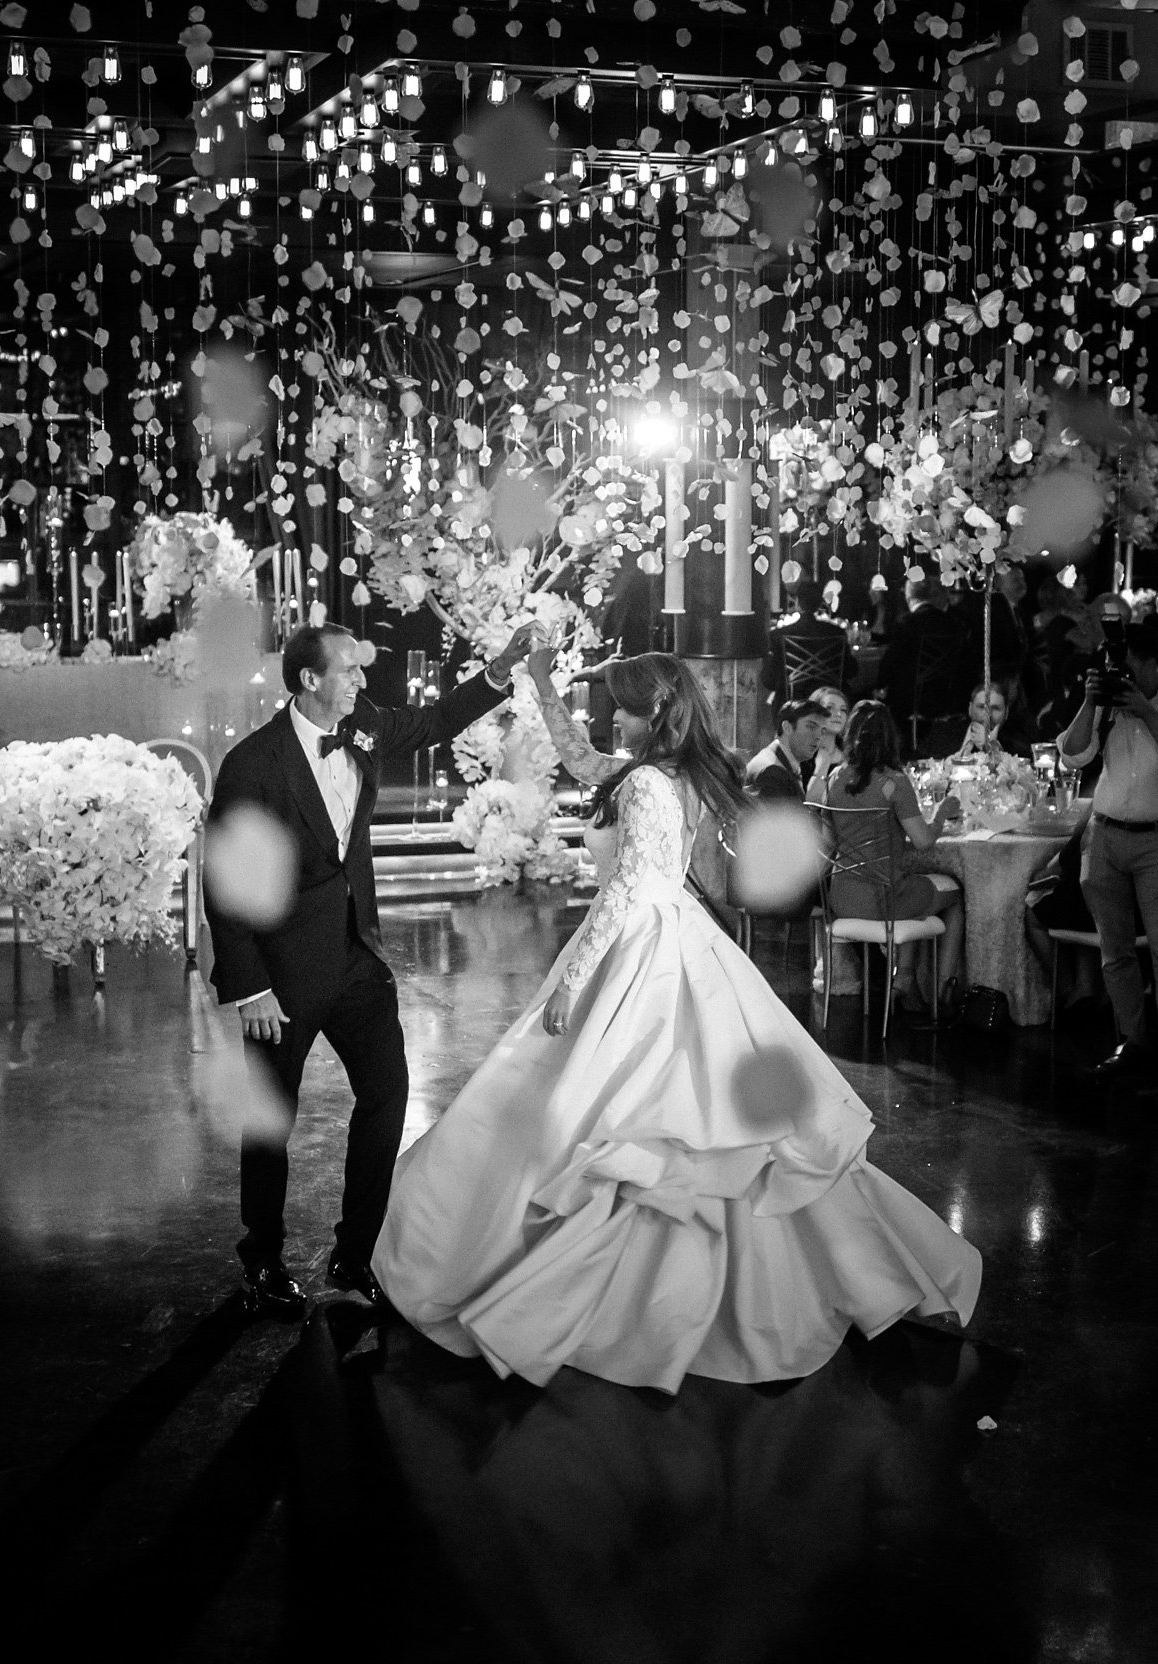 houston romantic wedding dance floor photo